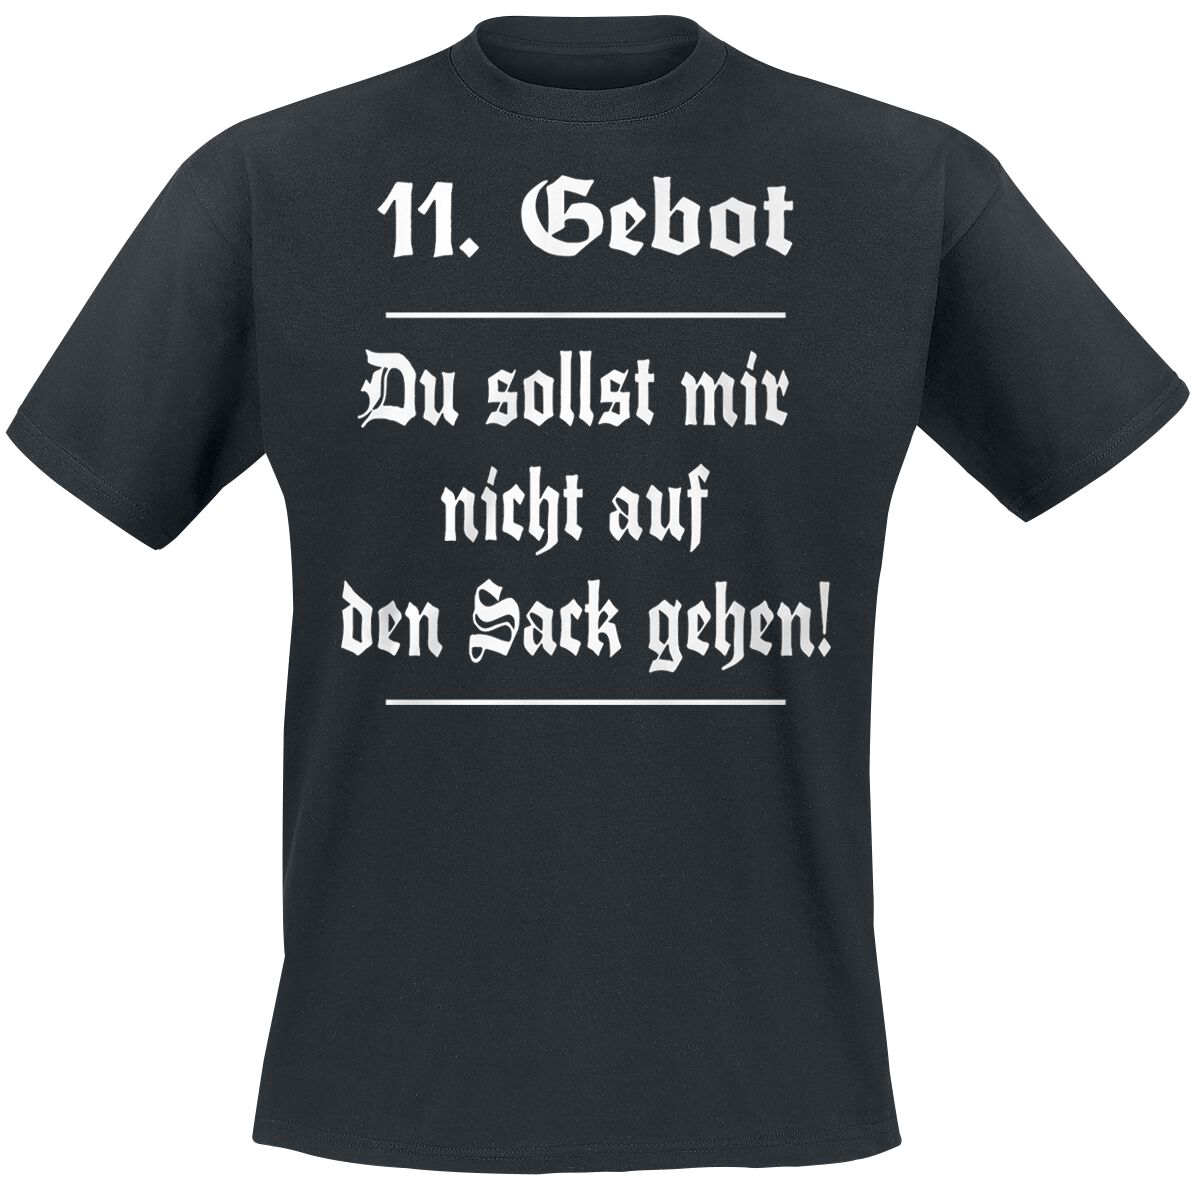 Sprüche T-Shirt - 11. Gebot - S bis 5XL - für Männer - Größe 5XL - schwarz